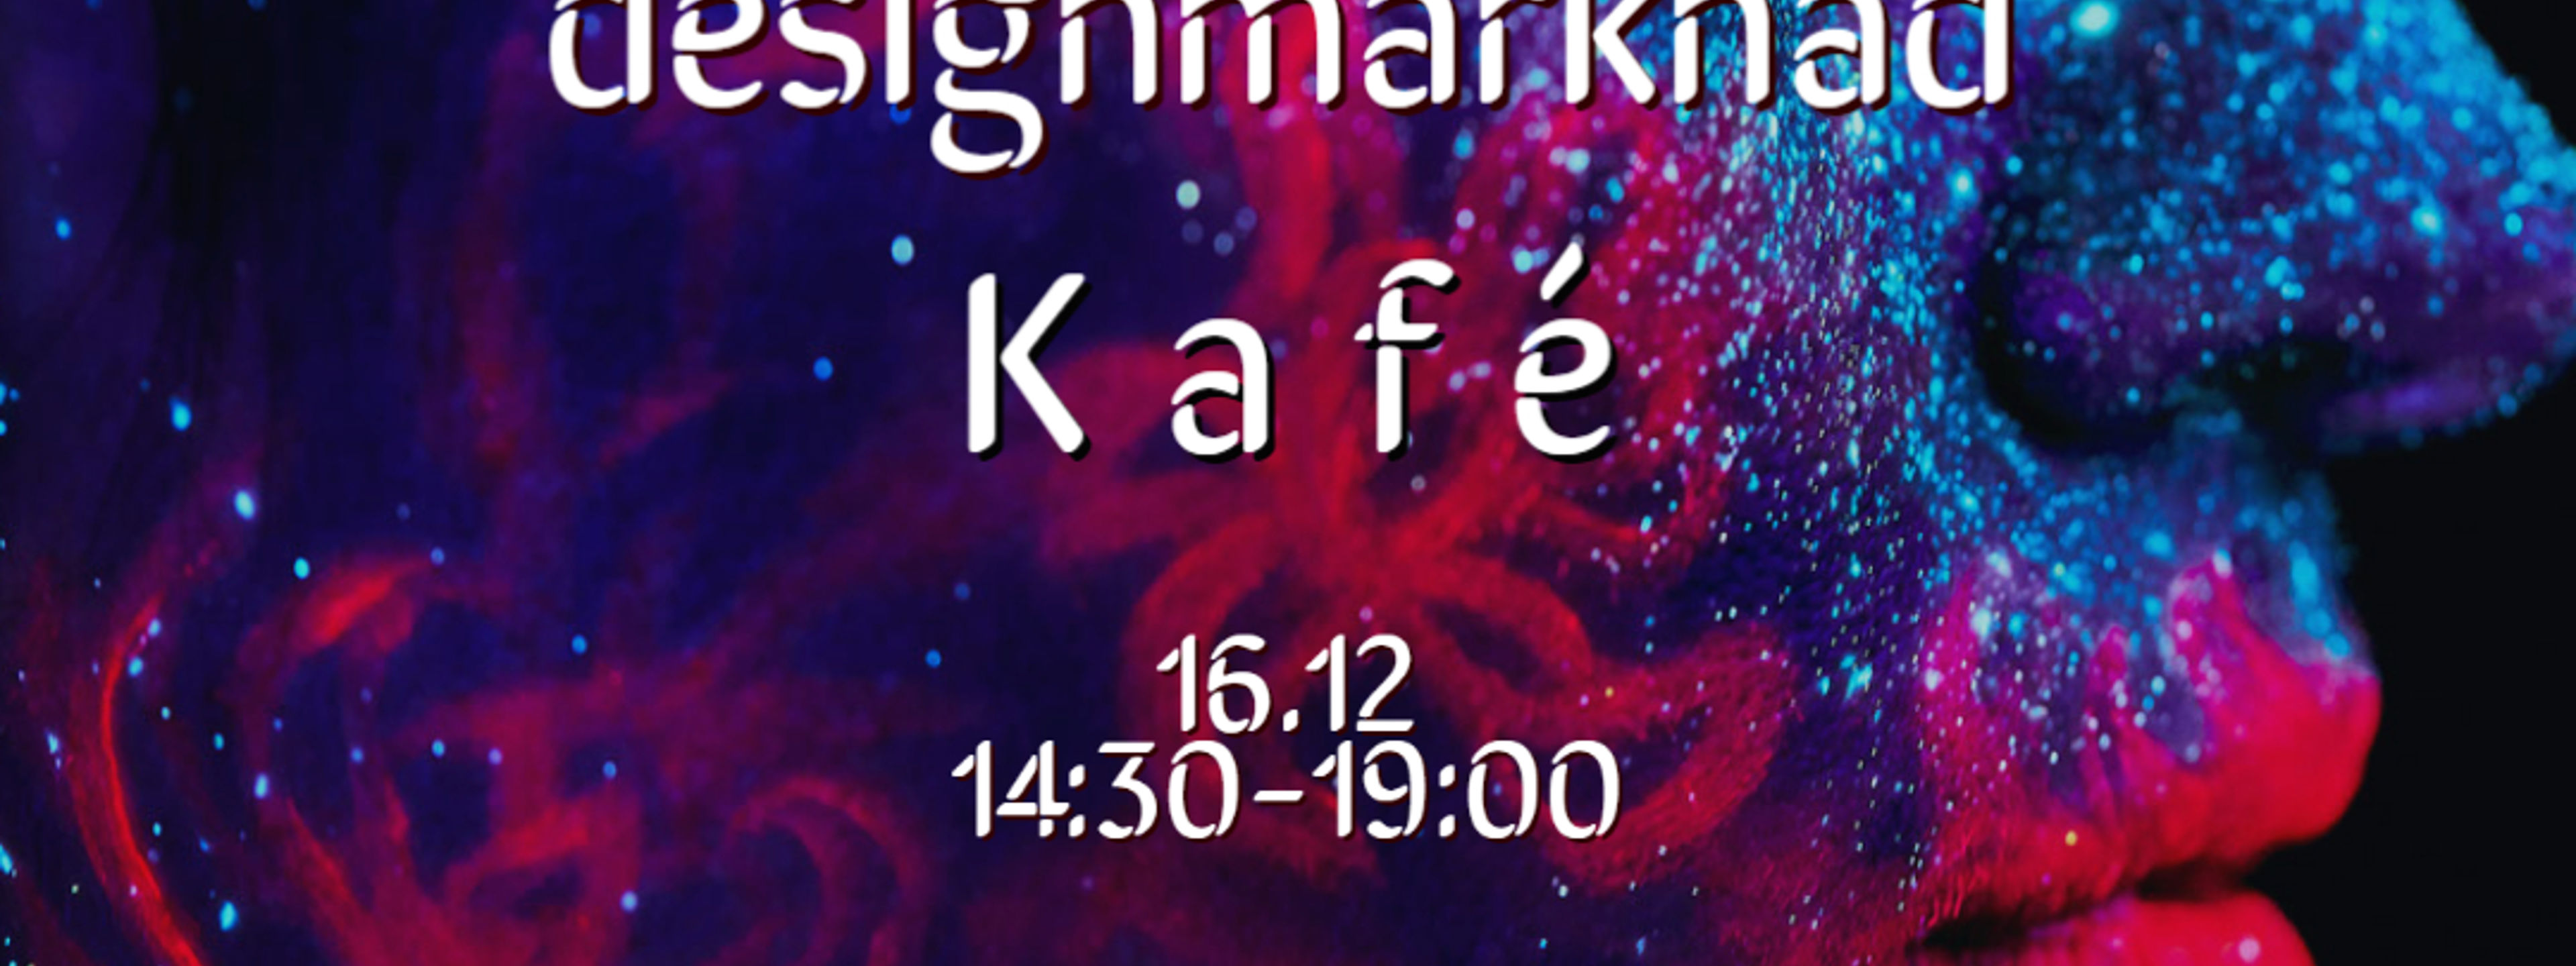 Kunst - og designmarknad og kafè 16. desember kl 14:30 til 19:00.